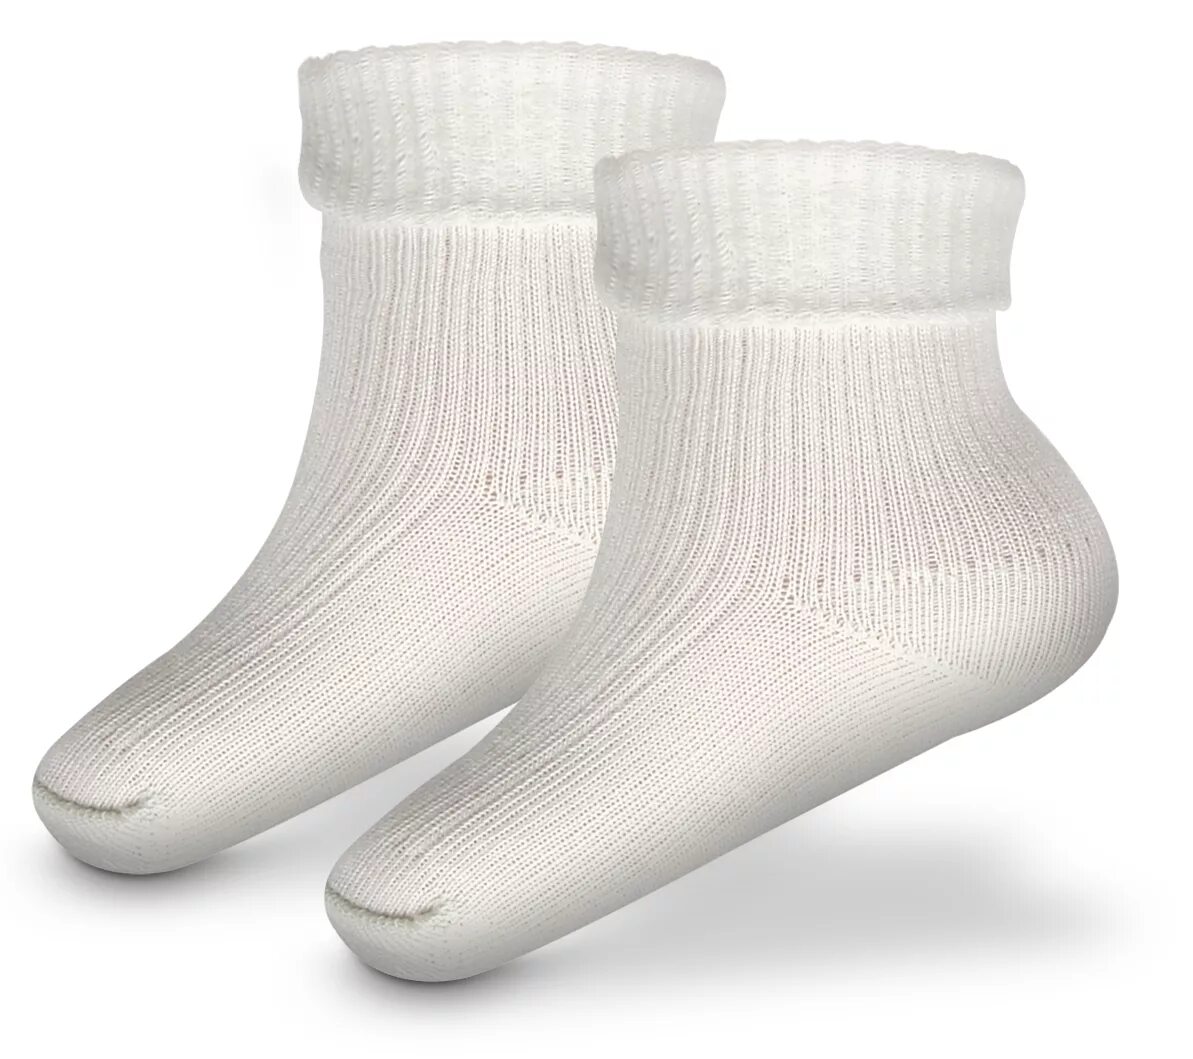 Купить хлопковые носки. Хлопчатобумажные носки. Носки из хлопка. Белые носки. Тонкие хлопчатобумажные носки.